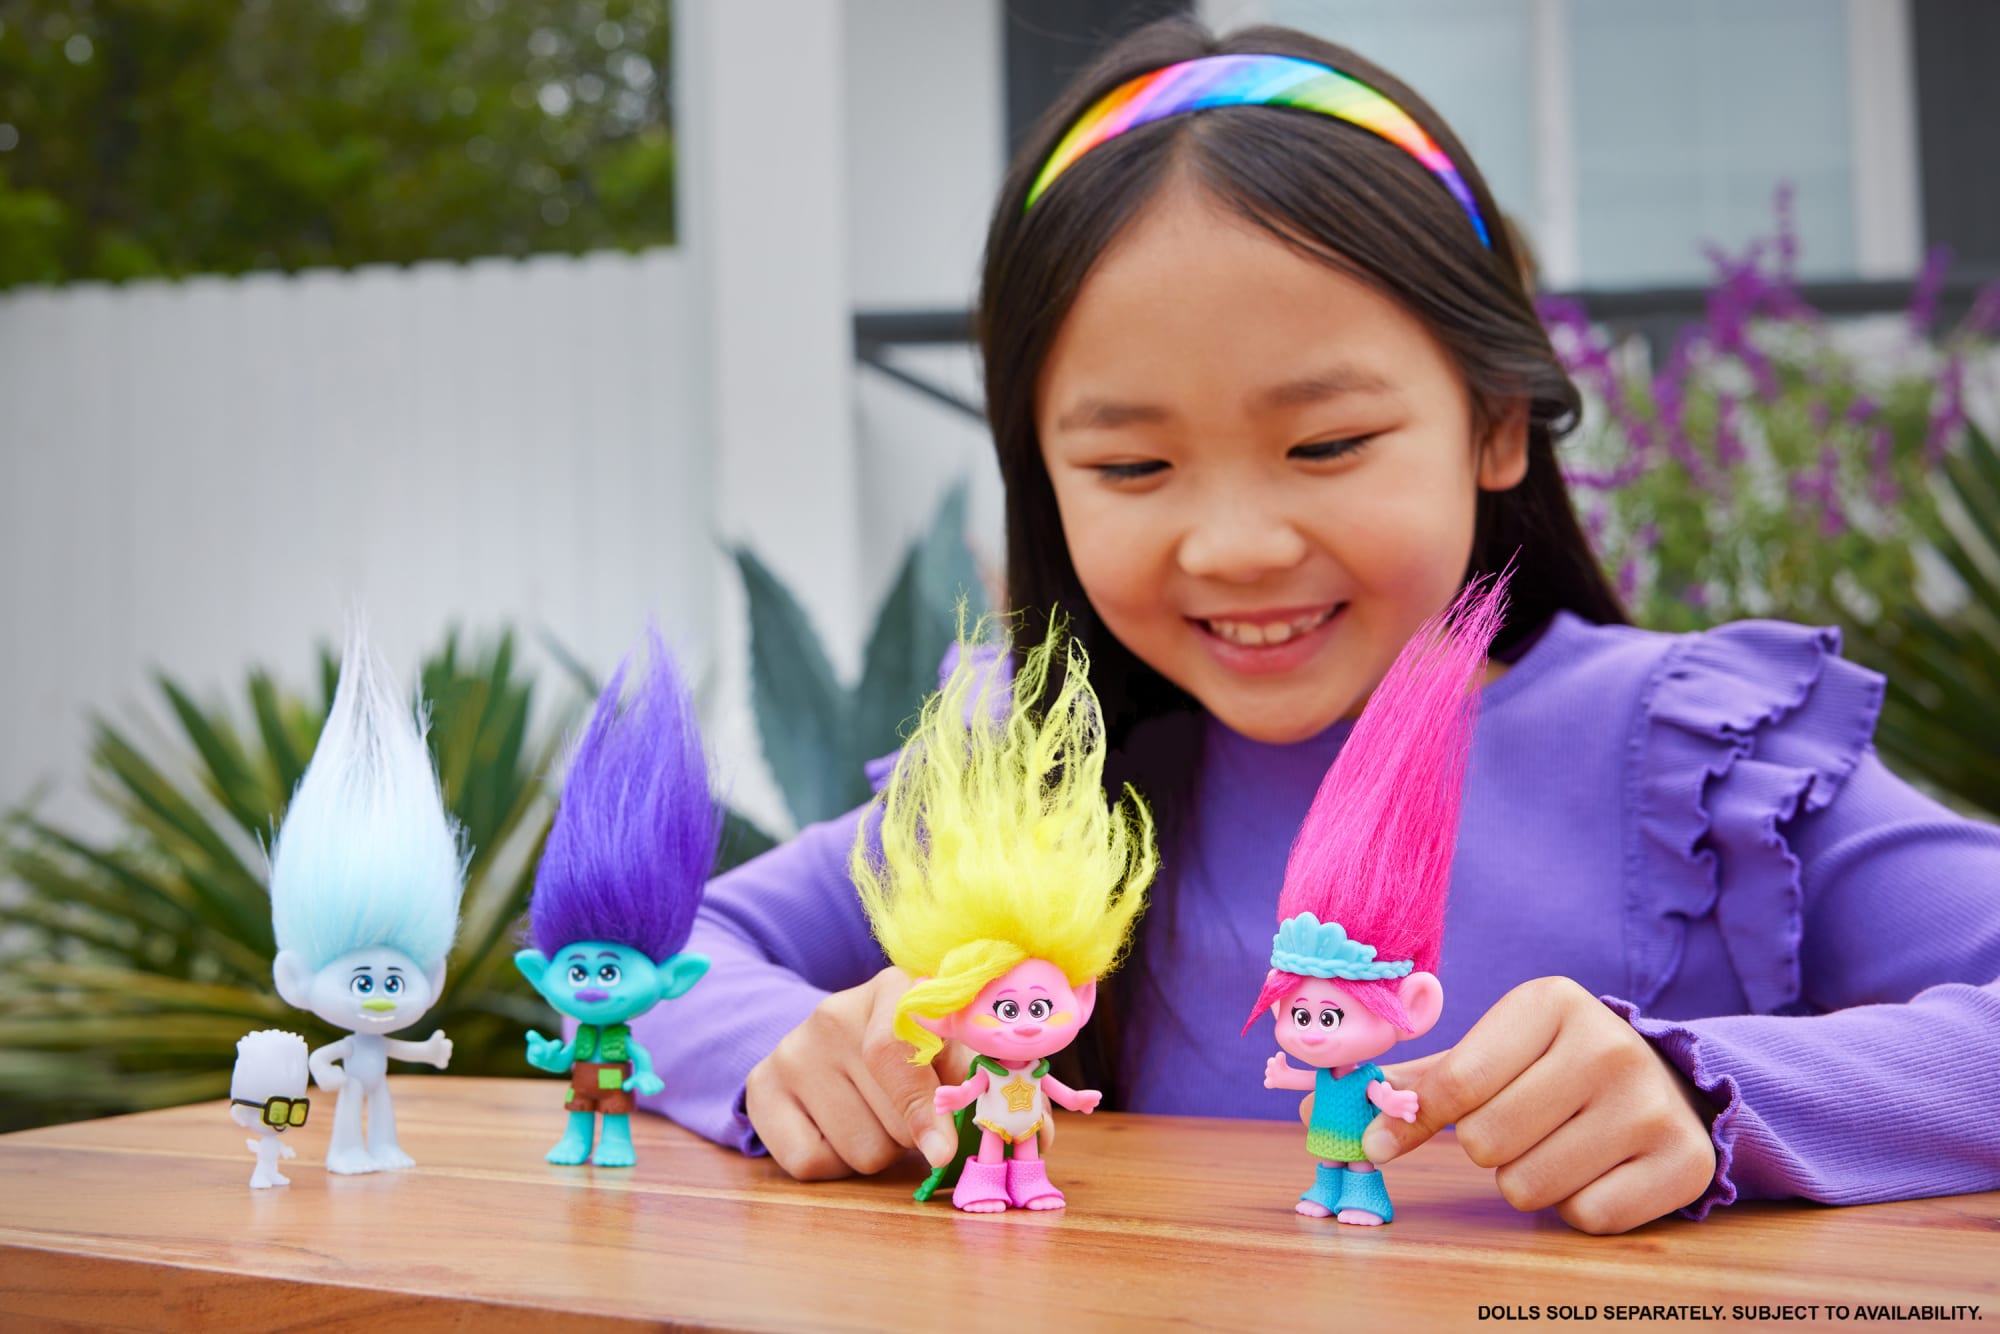 DreamWorks Trolls Band Together Hair-tastic Queen Poppy Fashion Doll